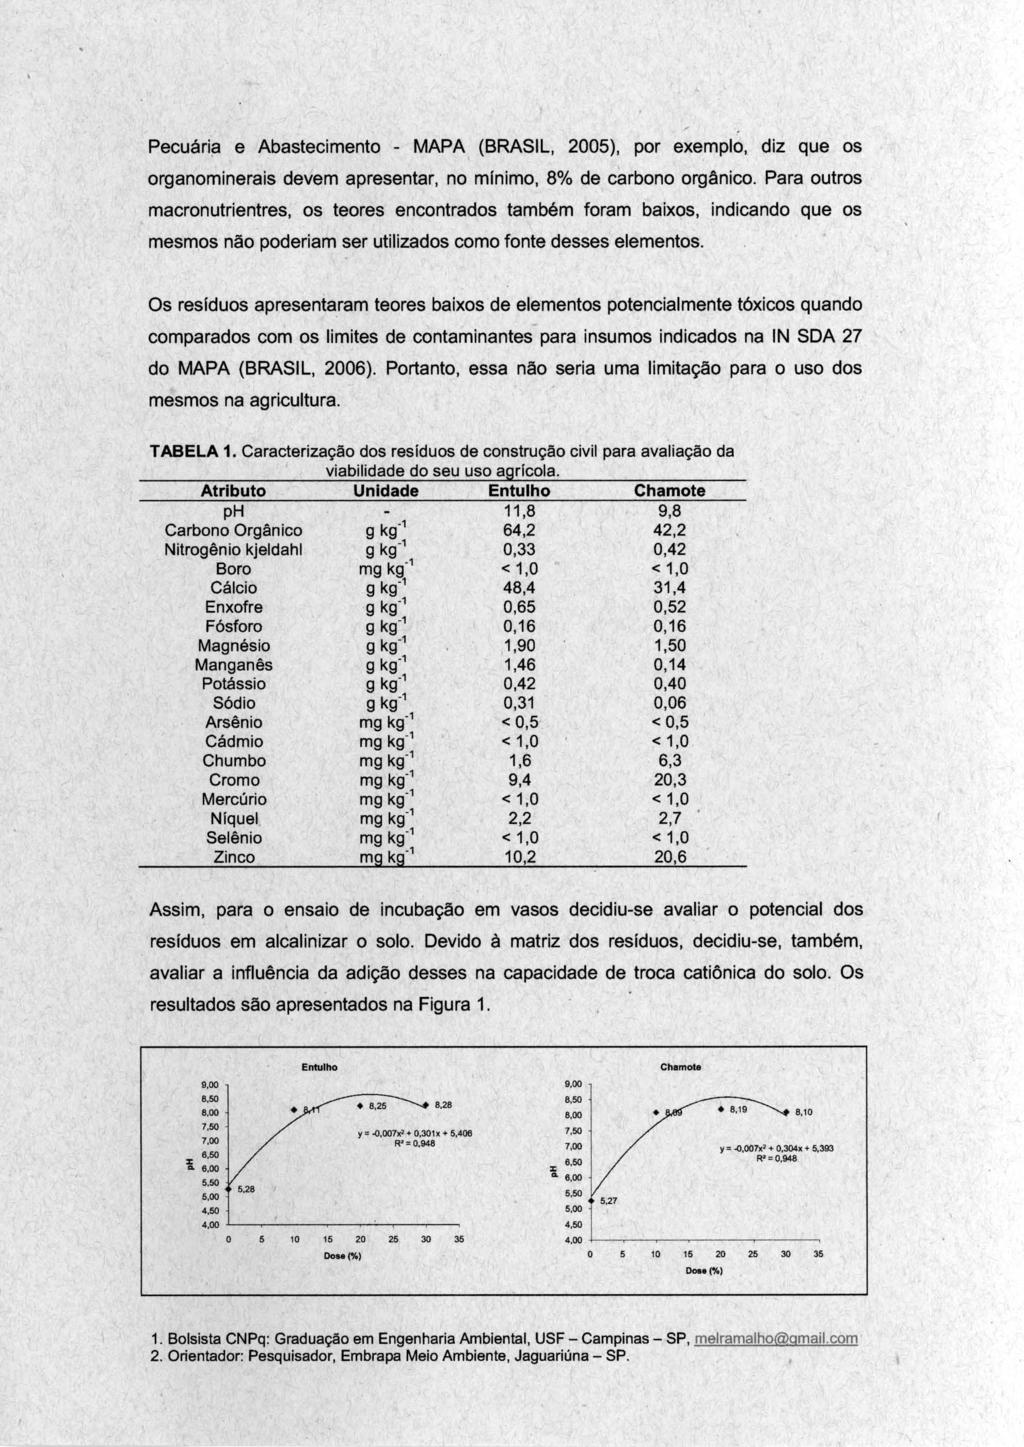 Pecuári~ e Abastecimento - MAPA (BRASIL, 2005), por exemplo, diz que os organominerais devem apresentar, no mfnimo, 8% de carbono orgânico.